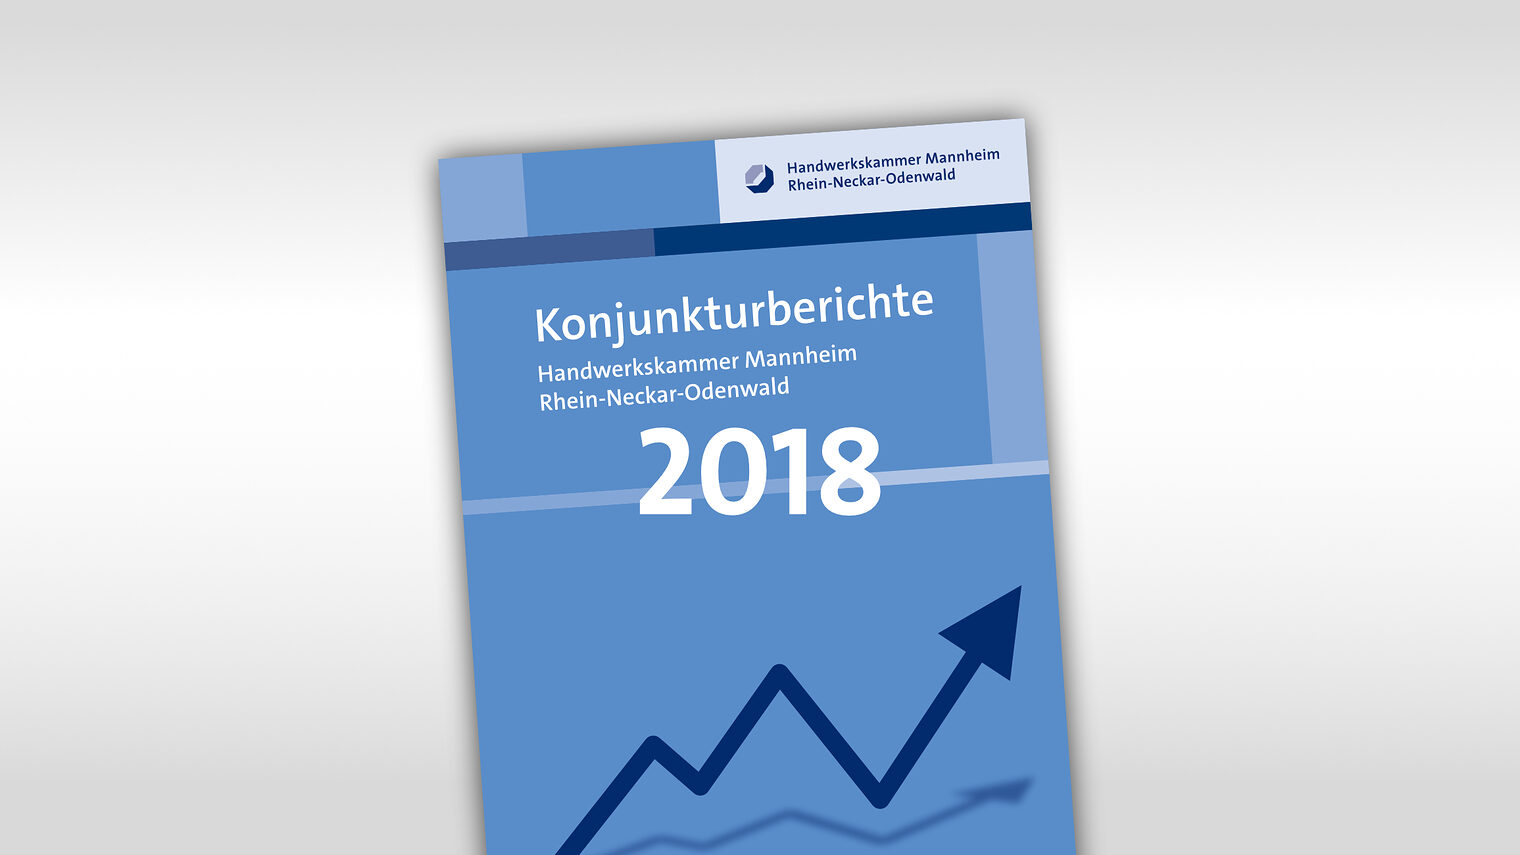 Titelmotiv Konjunkturbericht plus Jahreszahl 2018